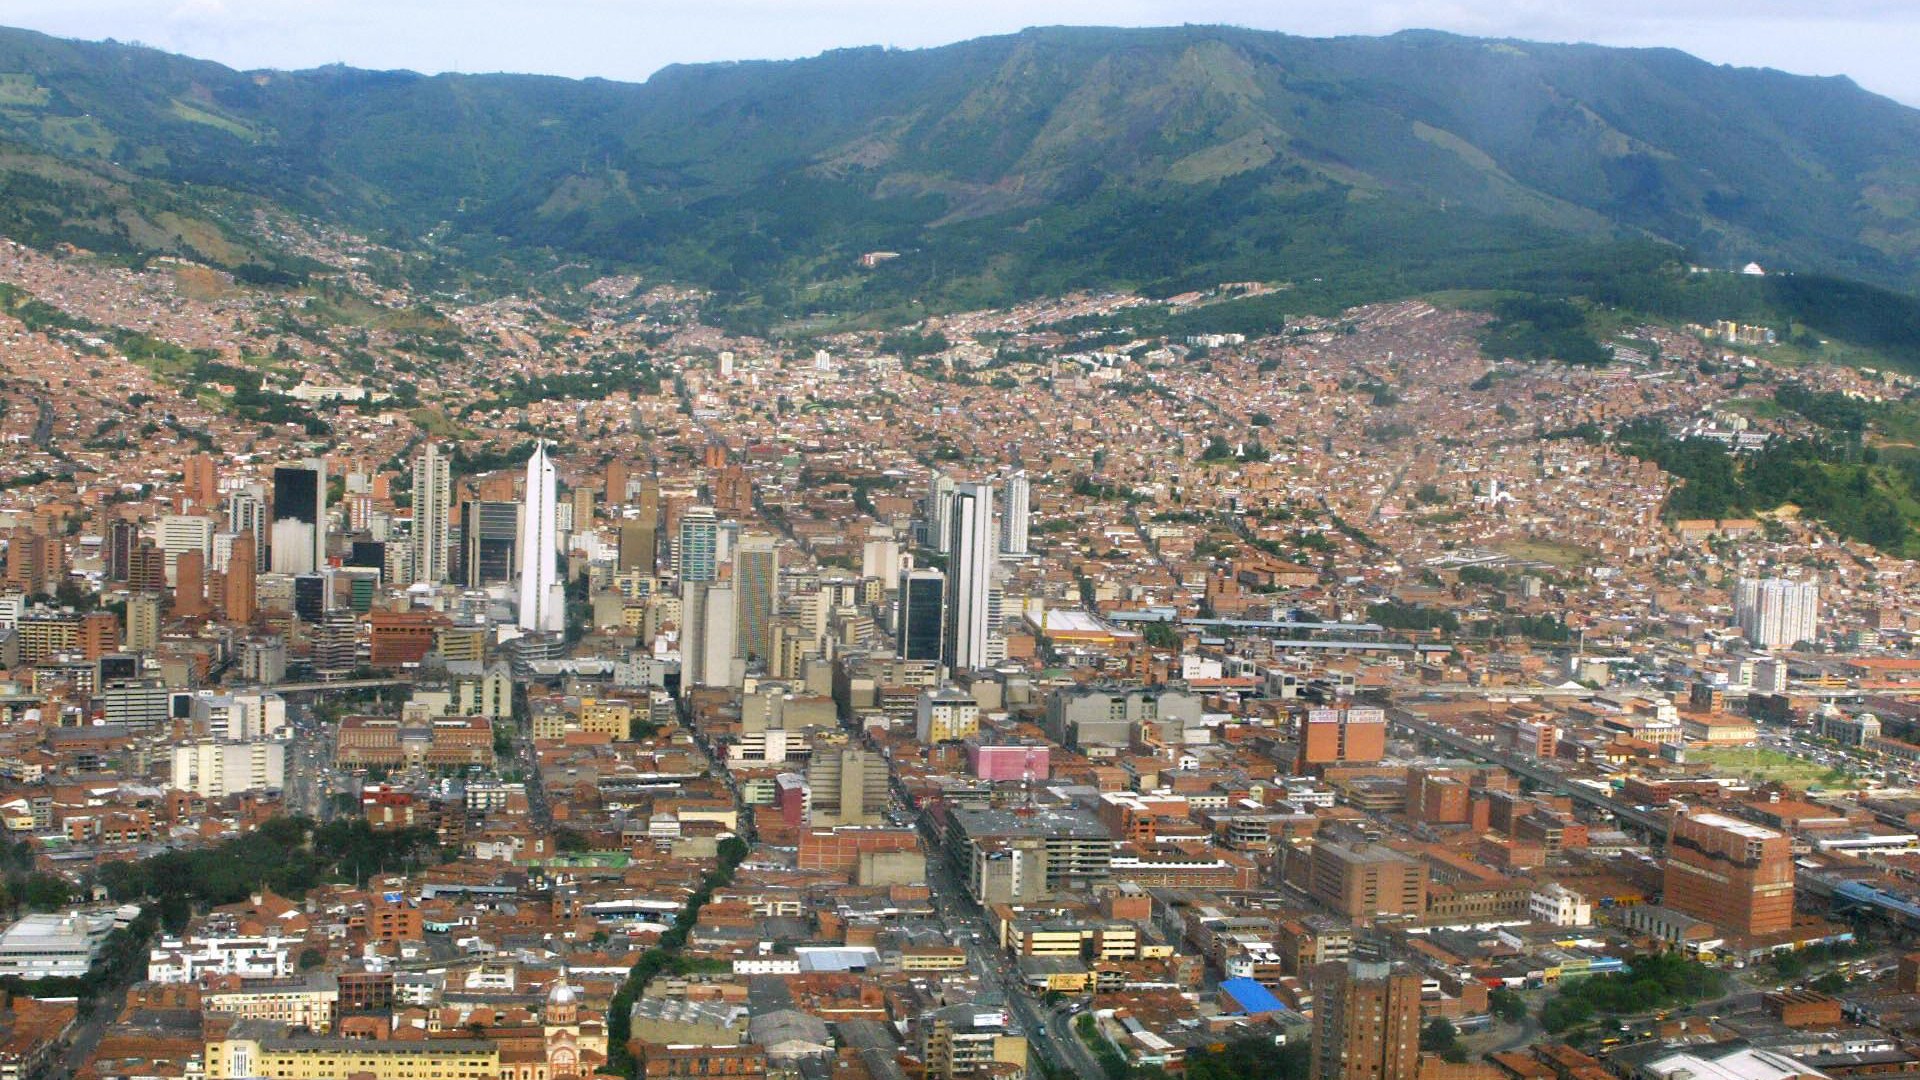 Setelah kasus seorang Amerika ditemukan bersama anak di bawah umur di sebuah hotel di Medellin, kota tersebut melarang layanan seksual selama enam bulan